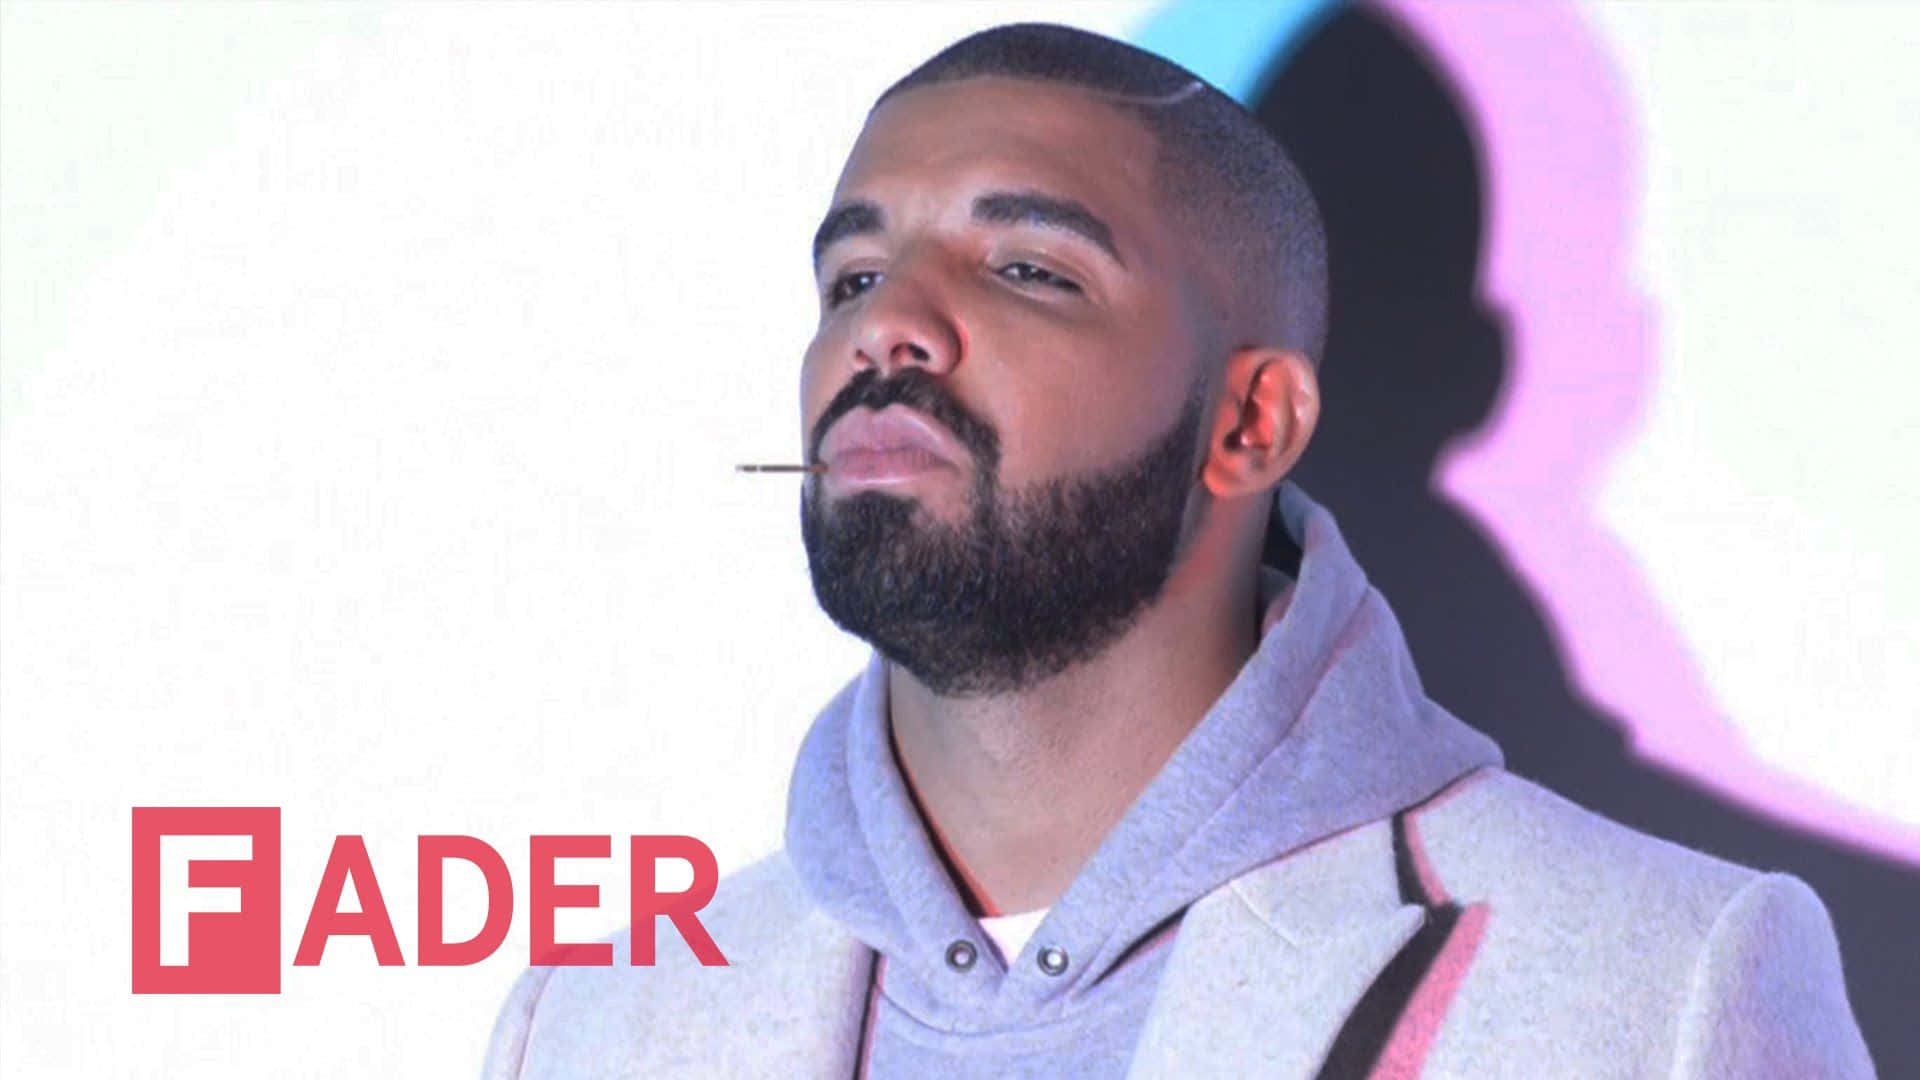 Artistaganador De Un Grammy, Drake, Se Presenta En El Escenario.